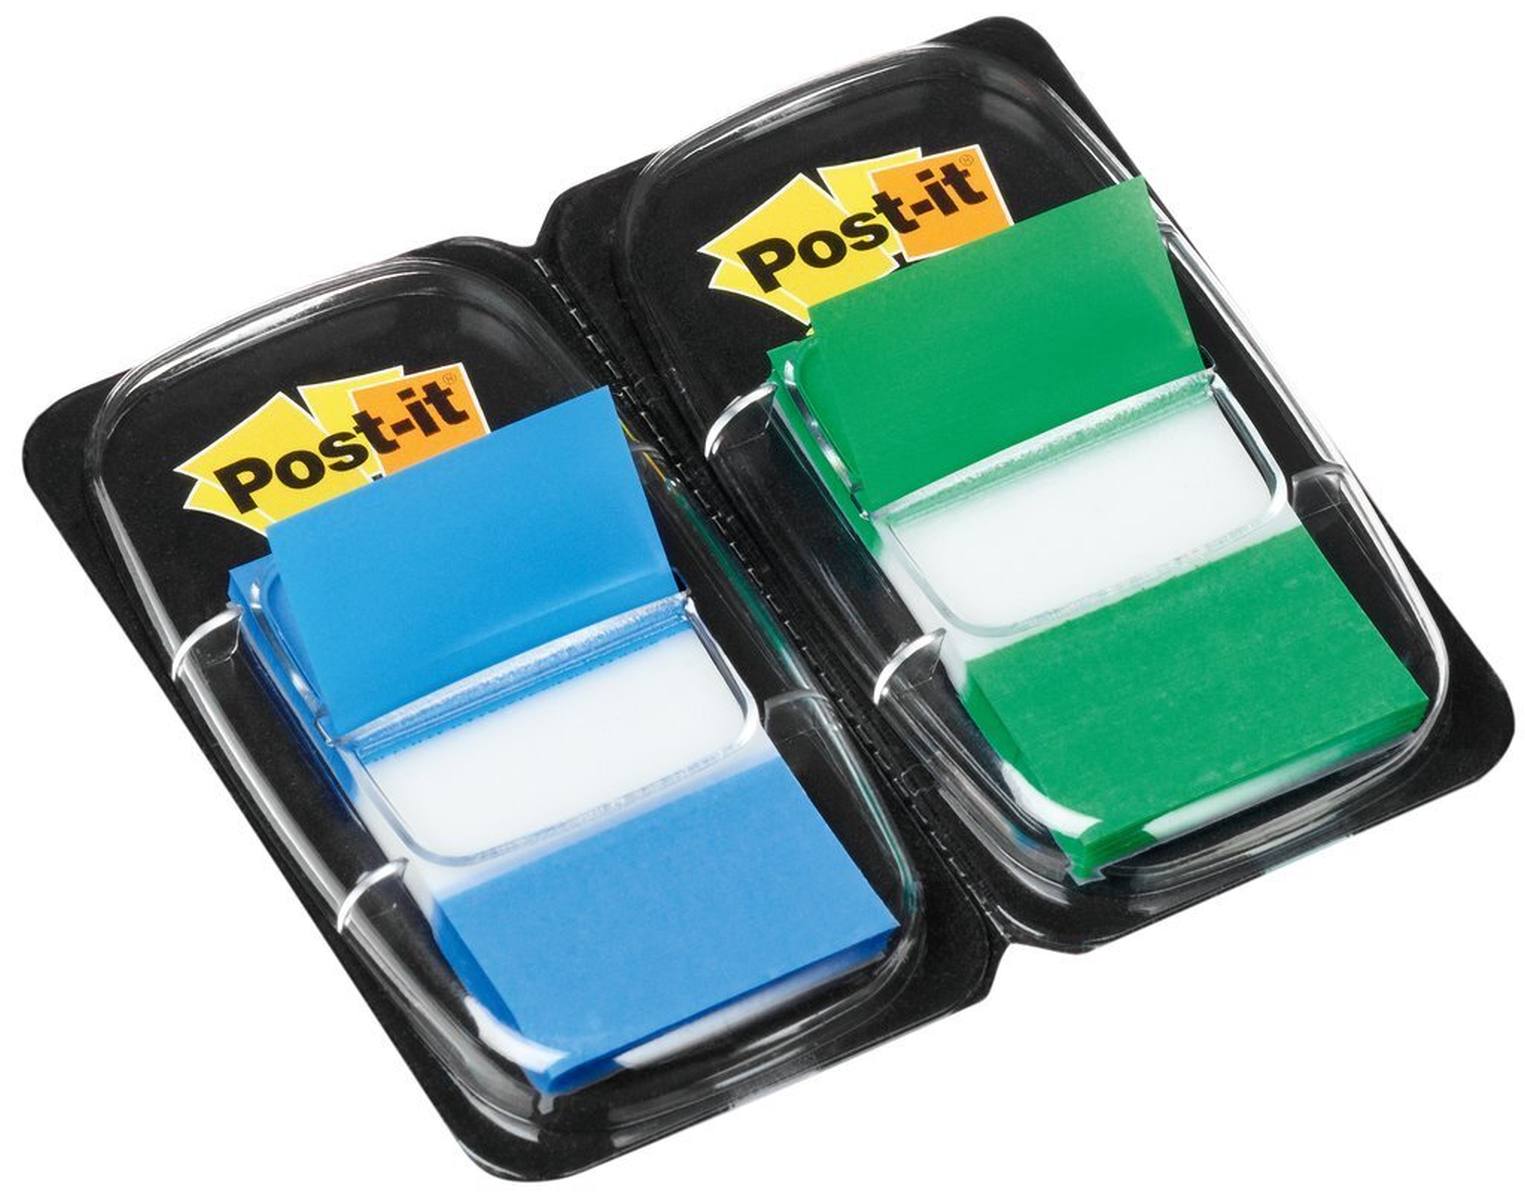 3M Post-it Index I680-GB2, 25,4 mm x 43,2 mm, sininen, vihreä, 2 x 50 liimanauhaa annostelulaitteessa